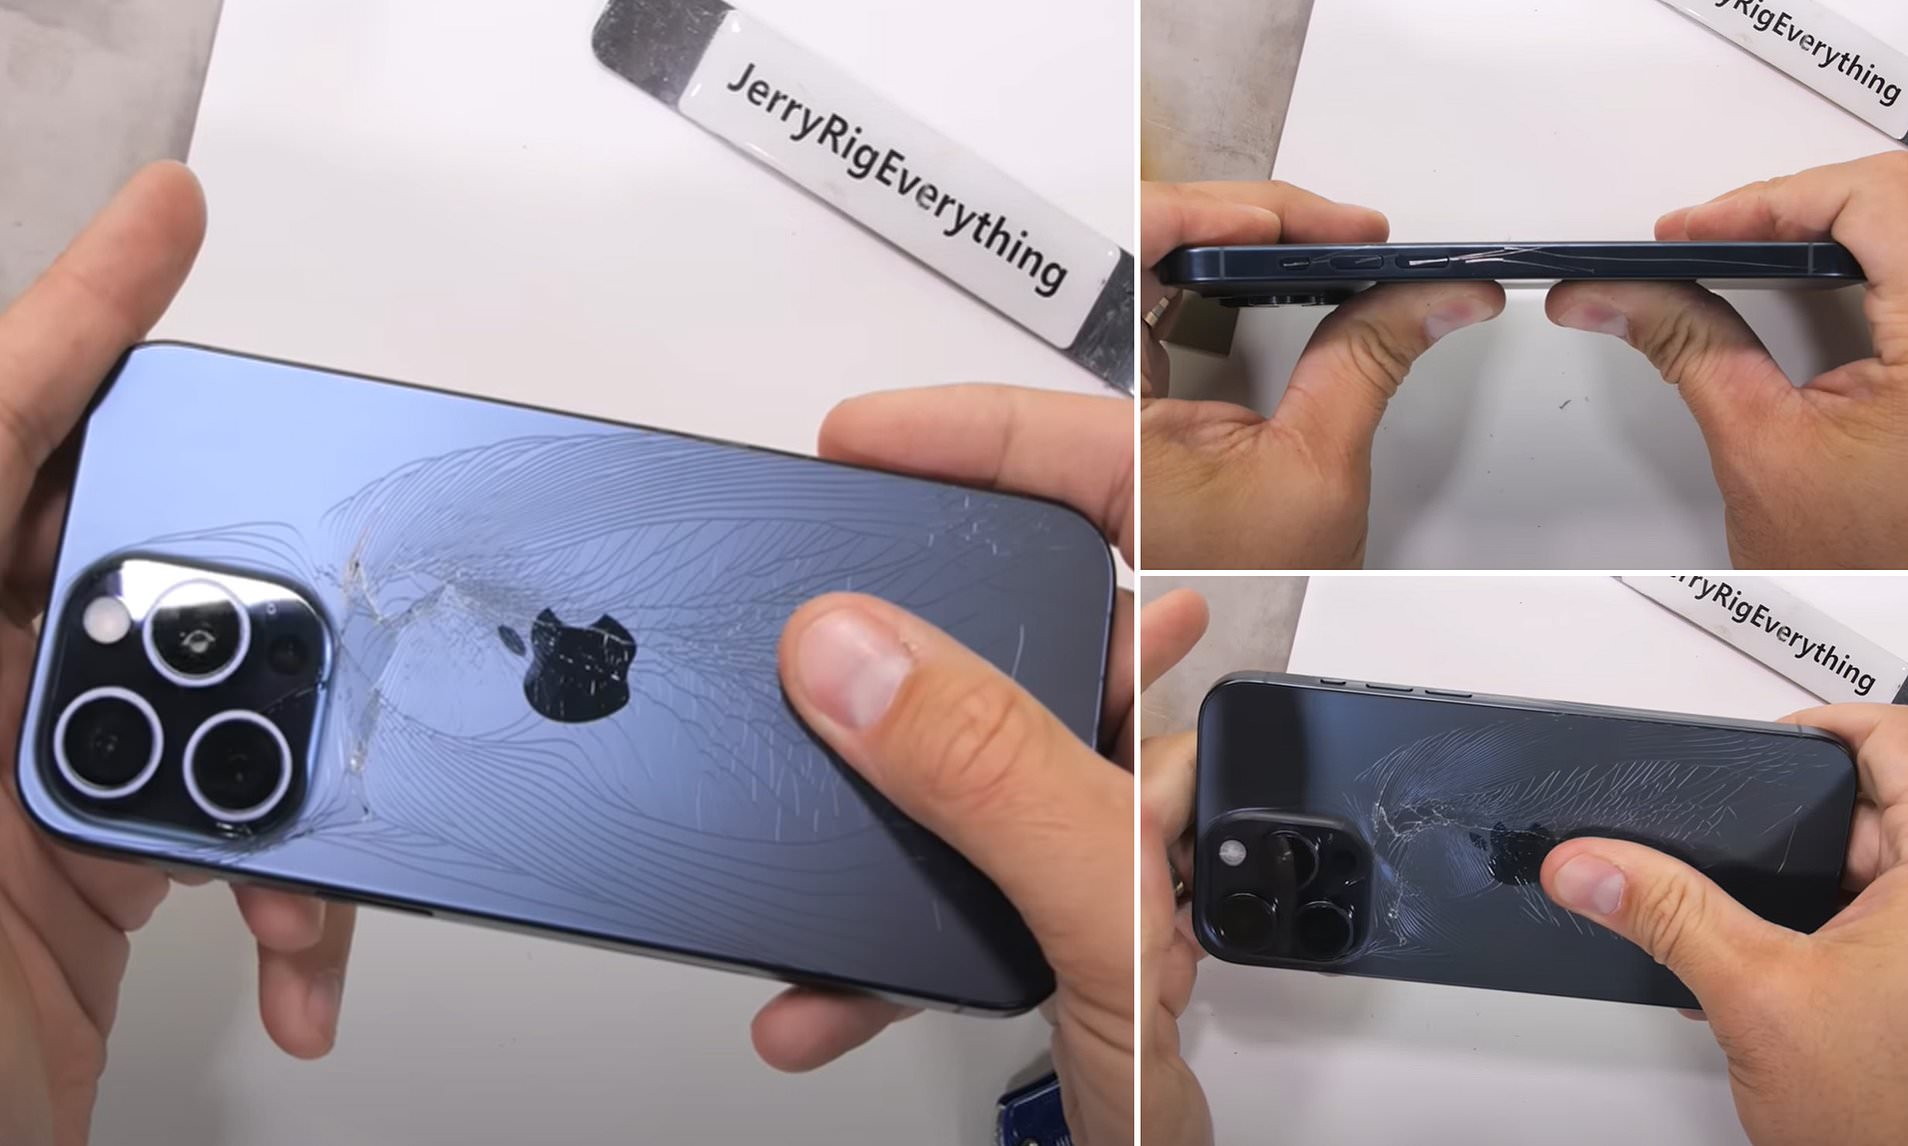 Thí nghiệm chứng minh độ bền của bộ khung titan iPhone 15 Pro Max: thả rơi 100 lần không hỏng, 45kg đè lên không gãy - Ảnh 1.